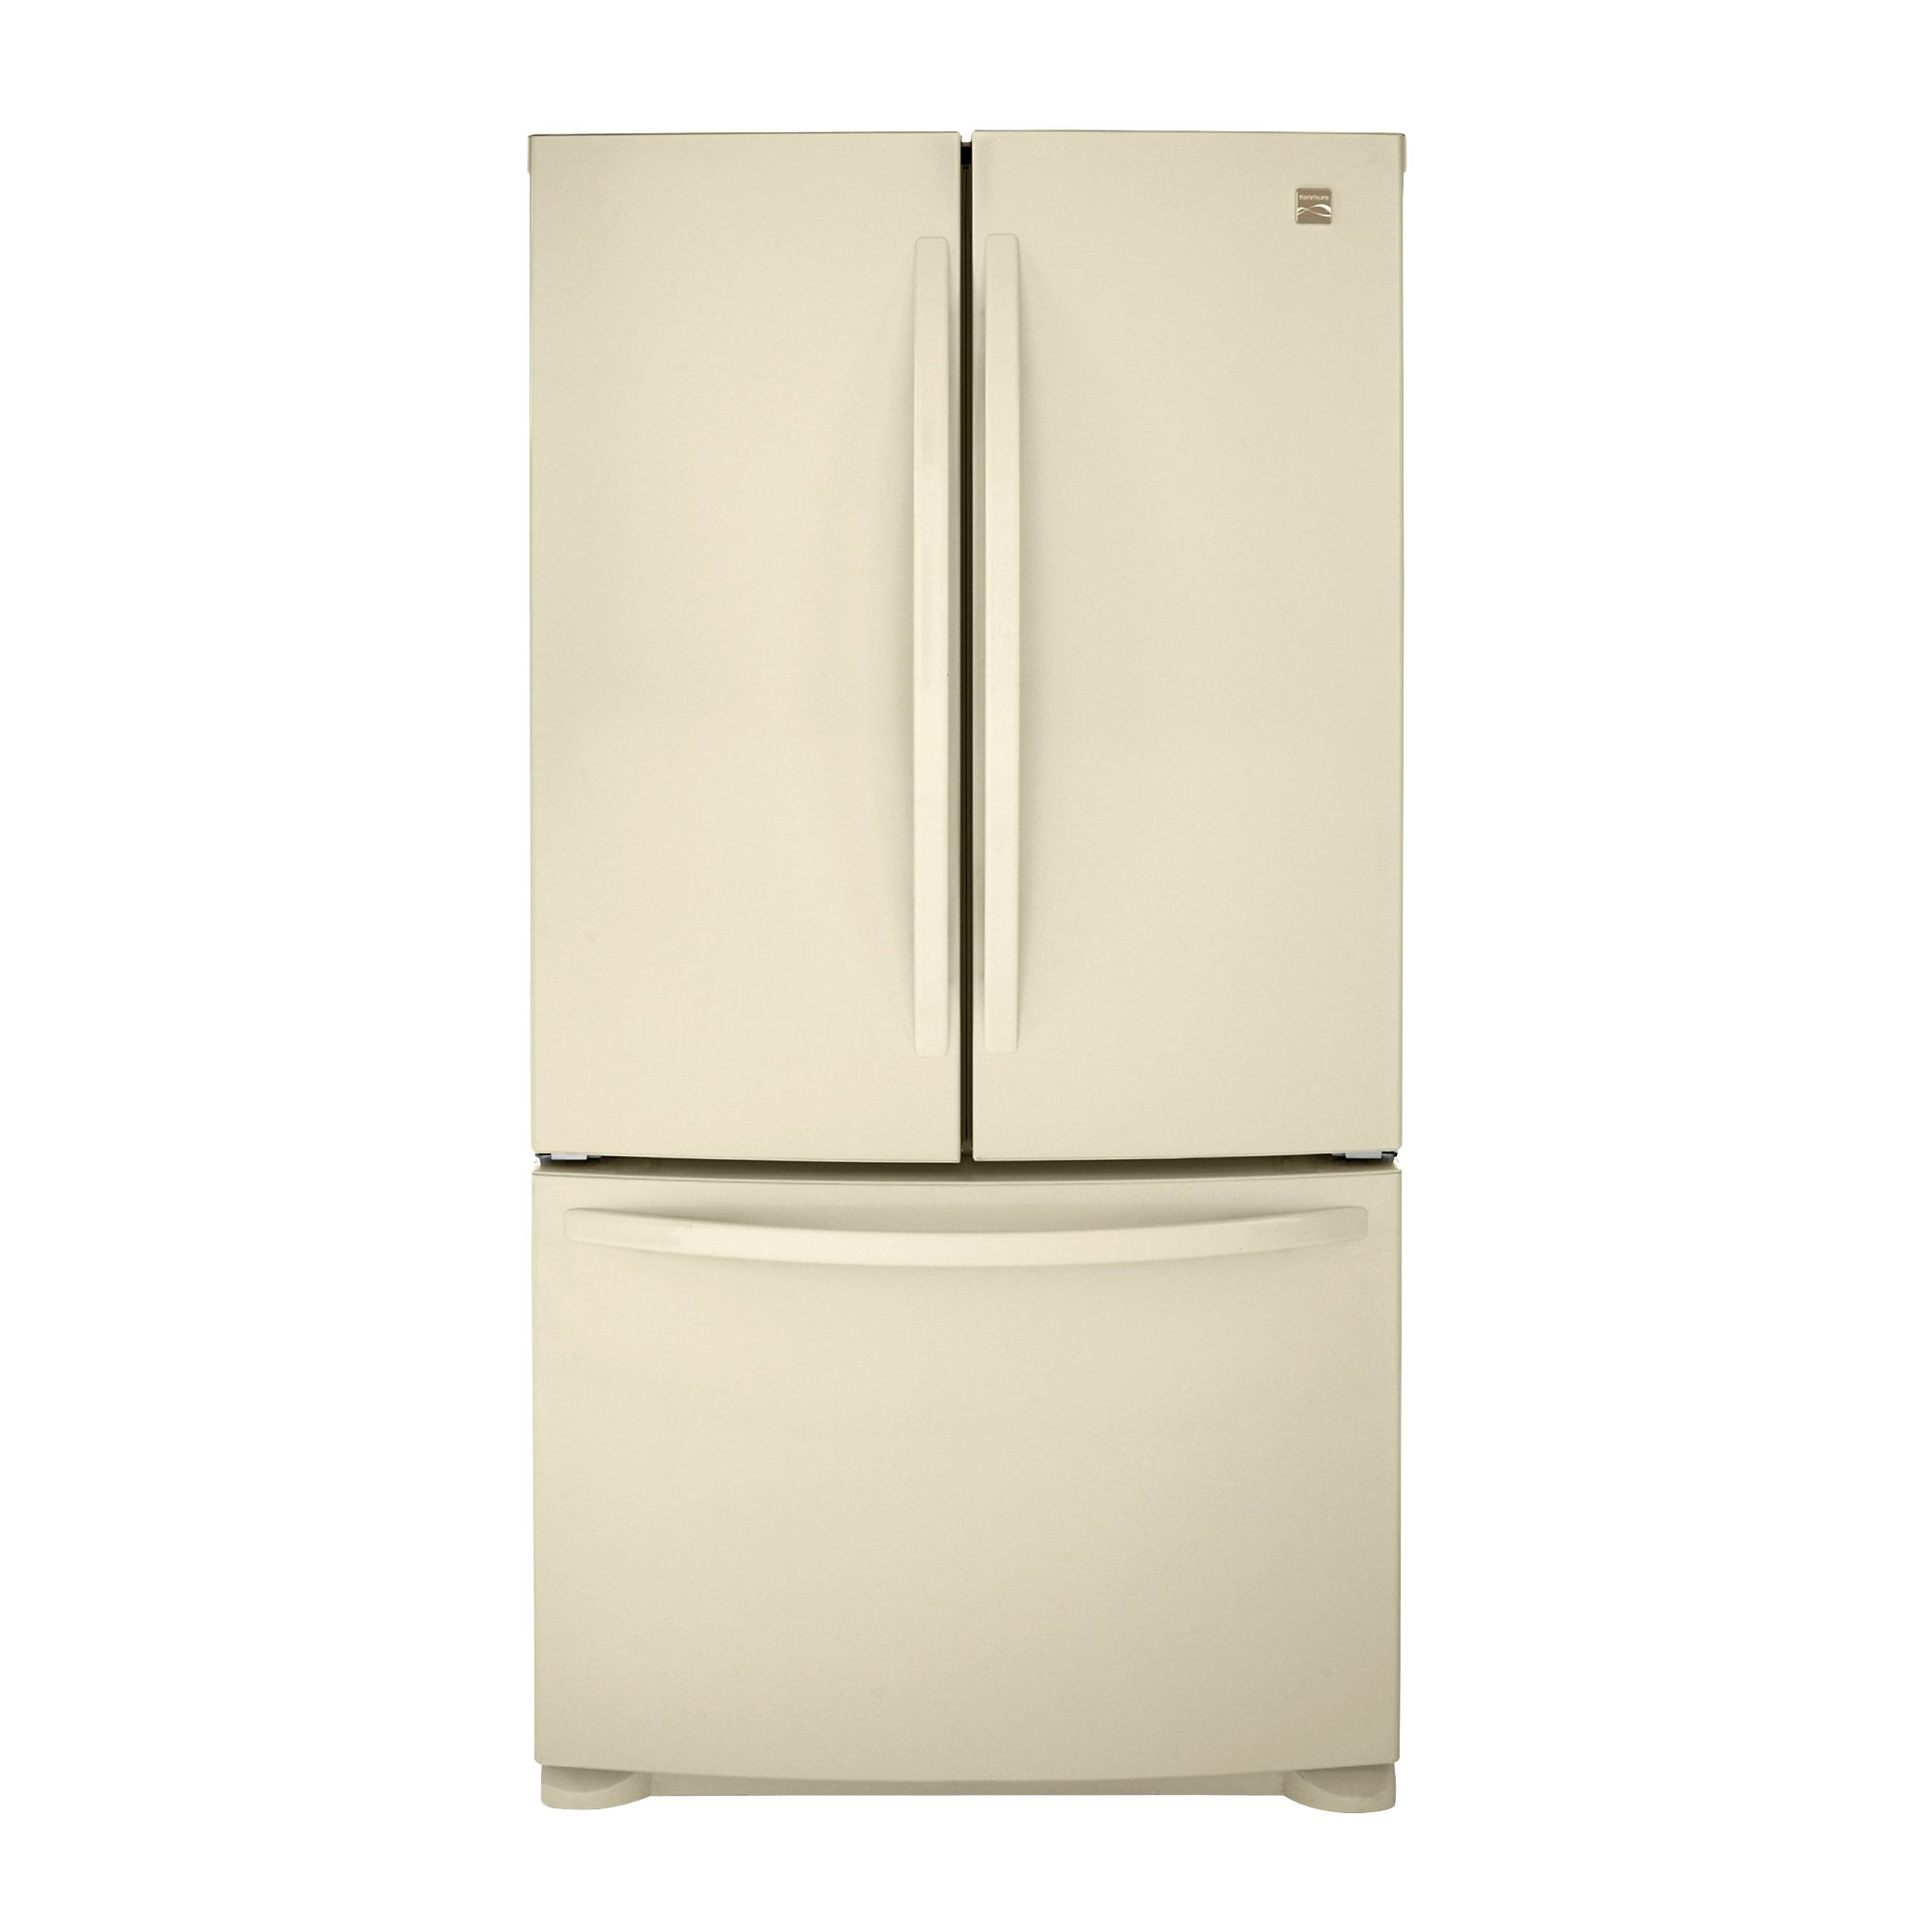 Bisque Refrigerator Bottom Freezer
 Kenmore 25 4 cu ft French Door Bottom Freezer